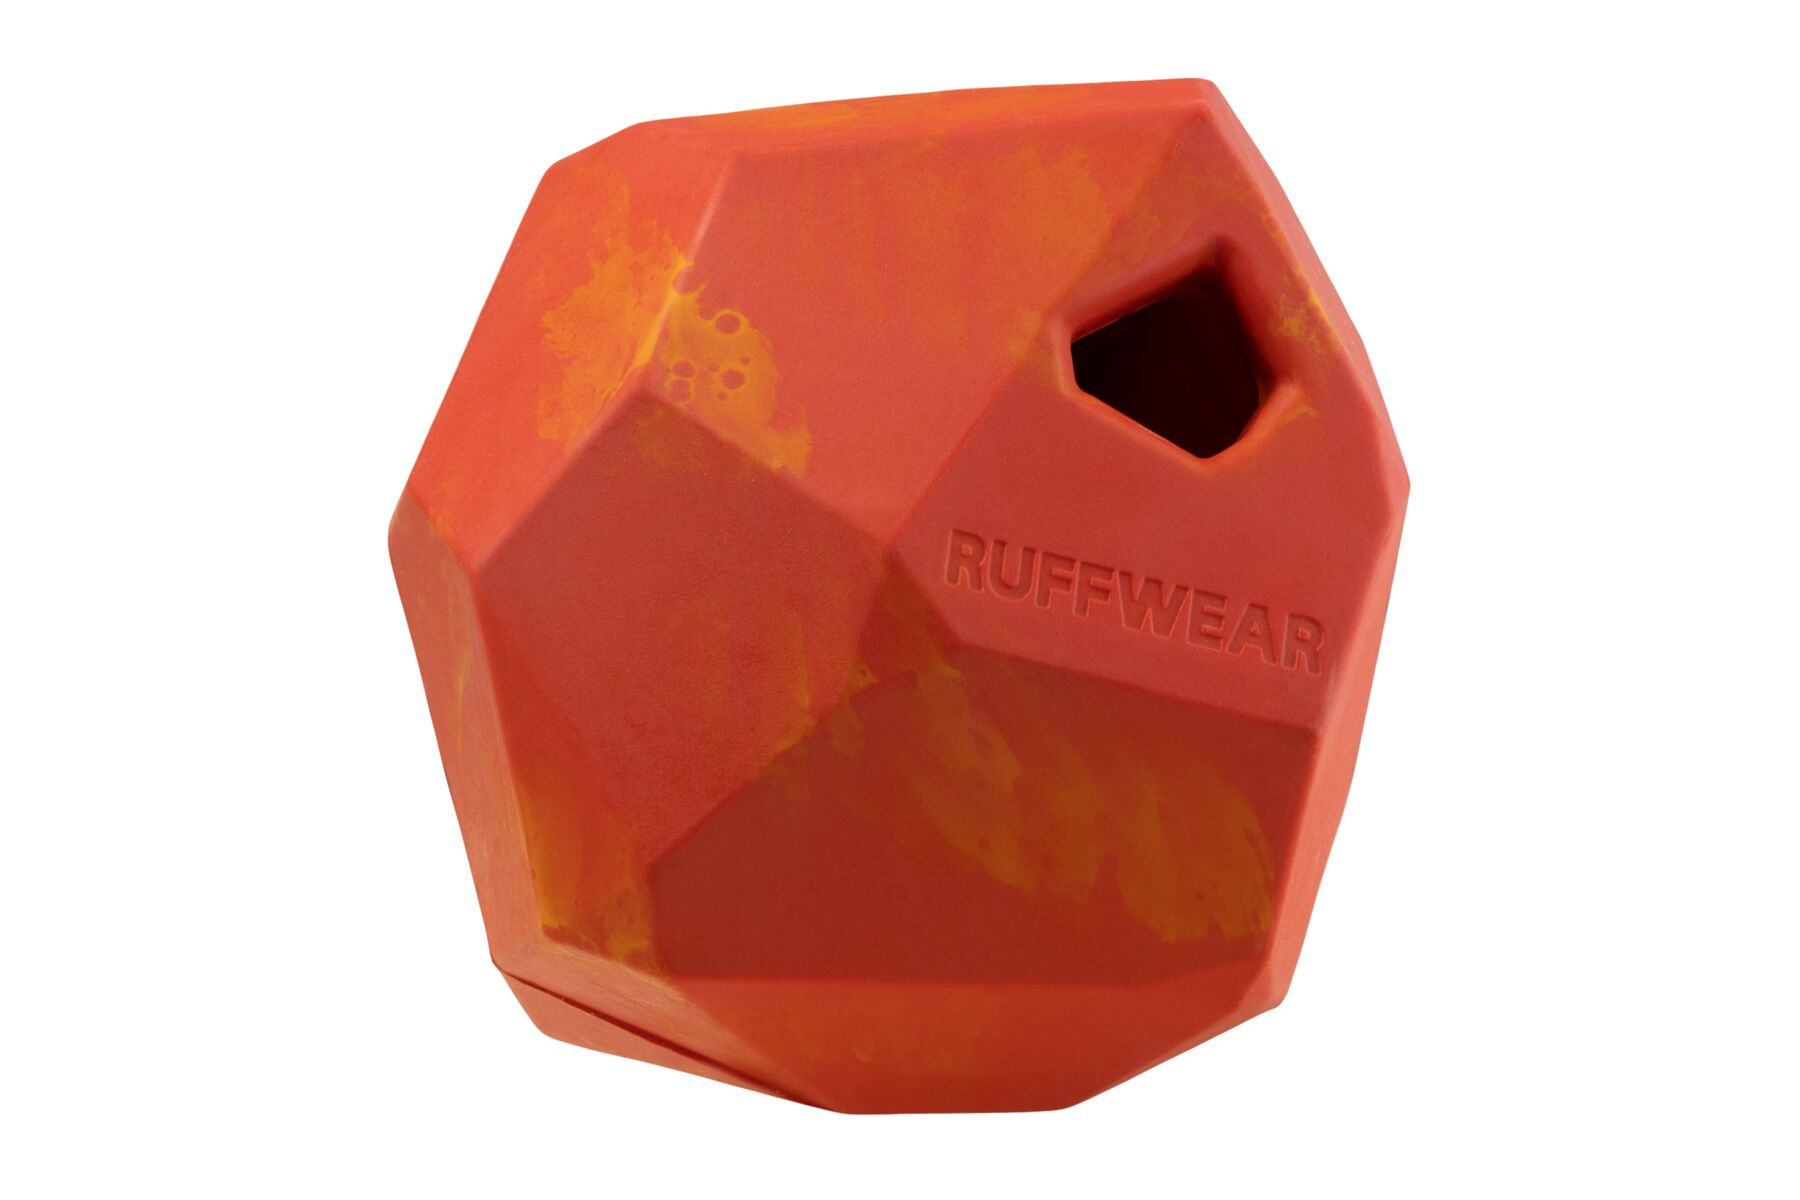 Brinquedo Gnawt-a-Rock da Ruffwear - várias cores disponíveis